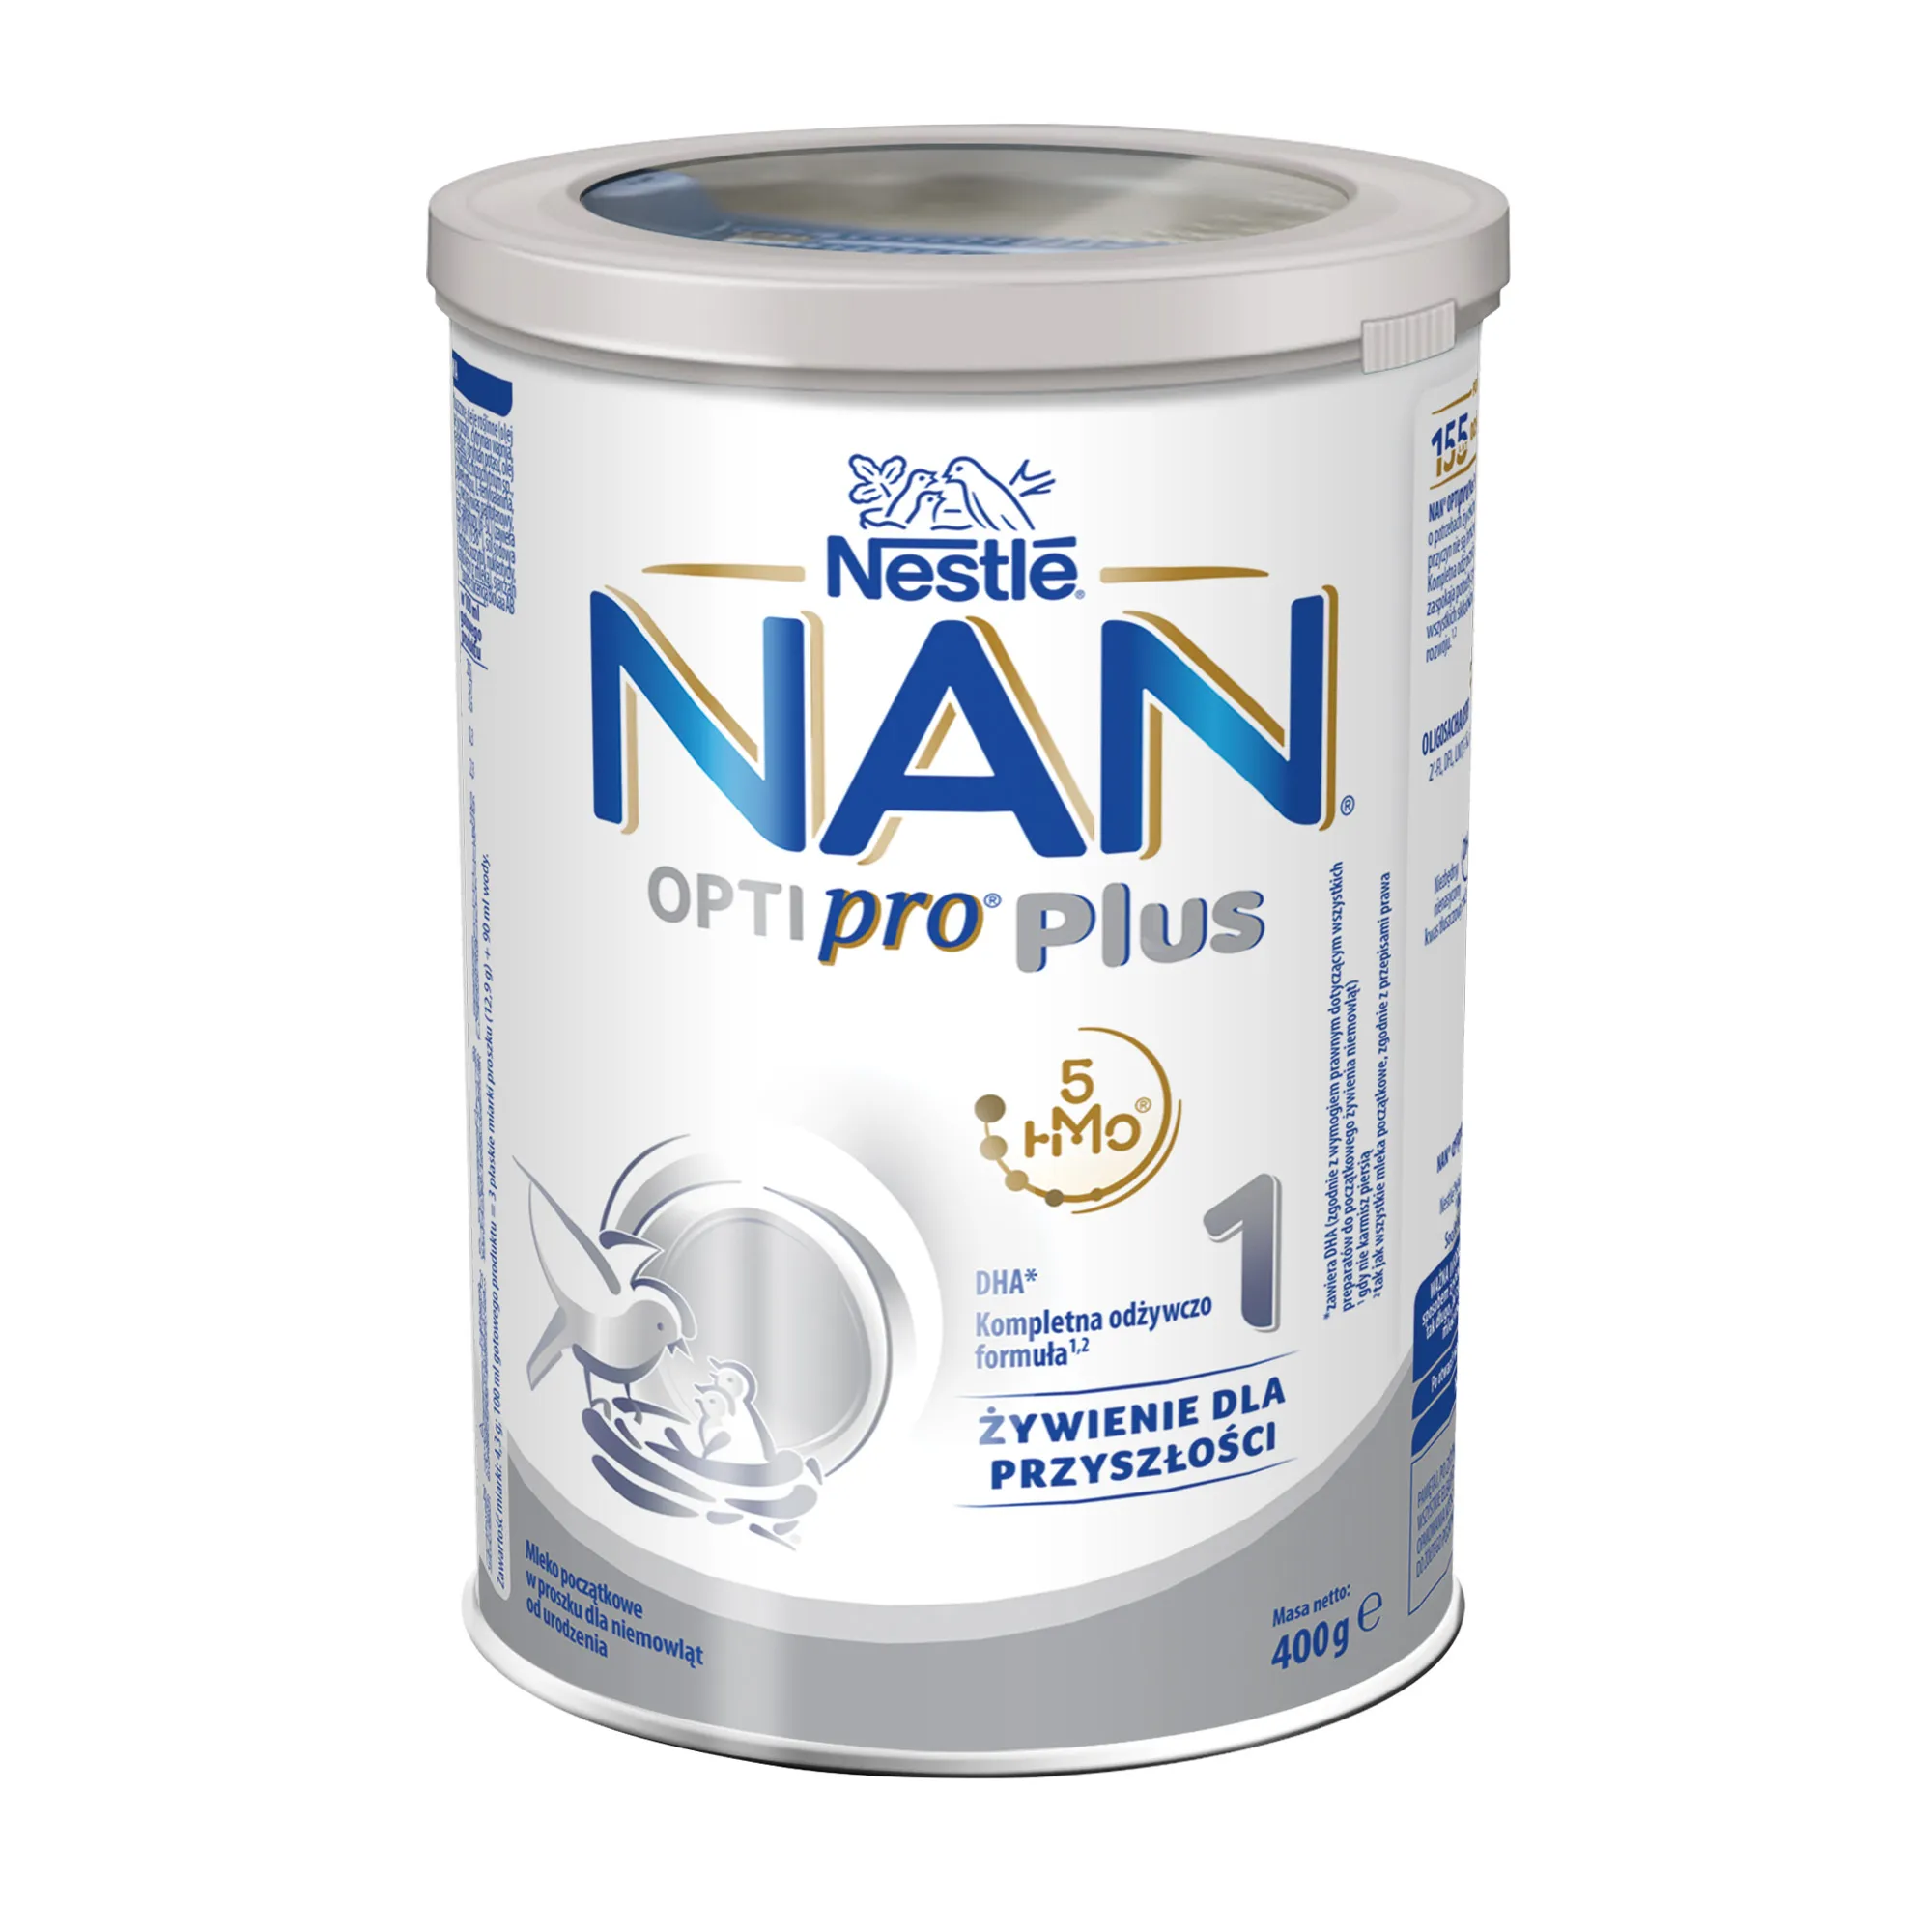 Nestle Nan Optipro Plus 1 HM-O, mleko początkowe dla niemowląt od urodzenia, 400 g